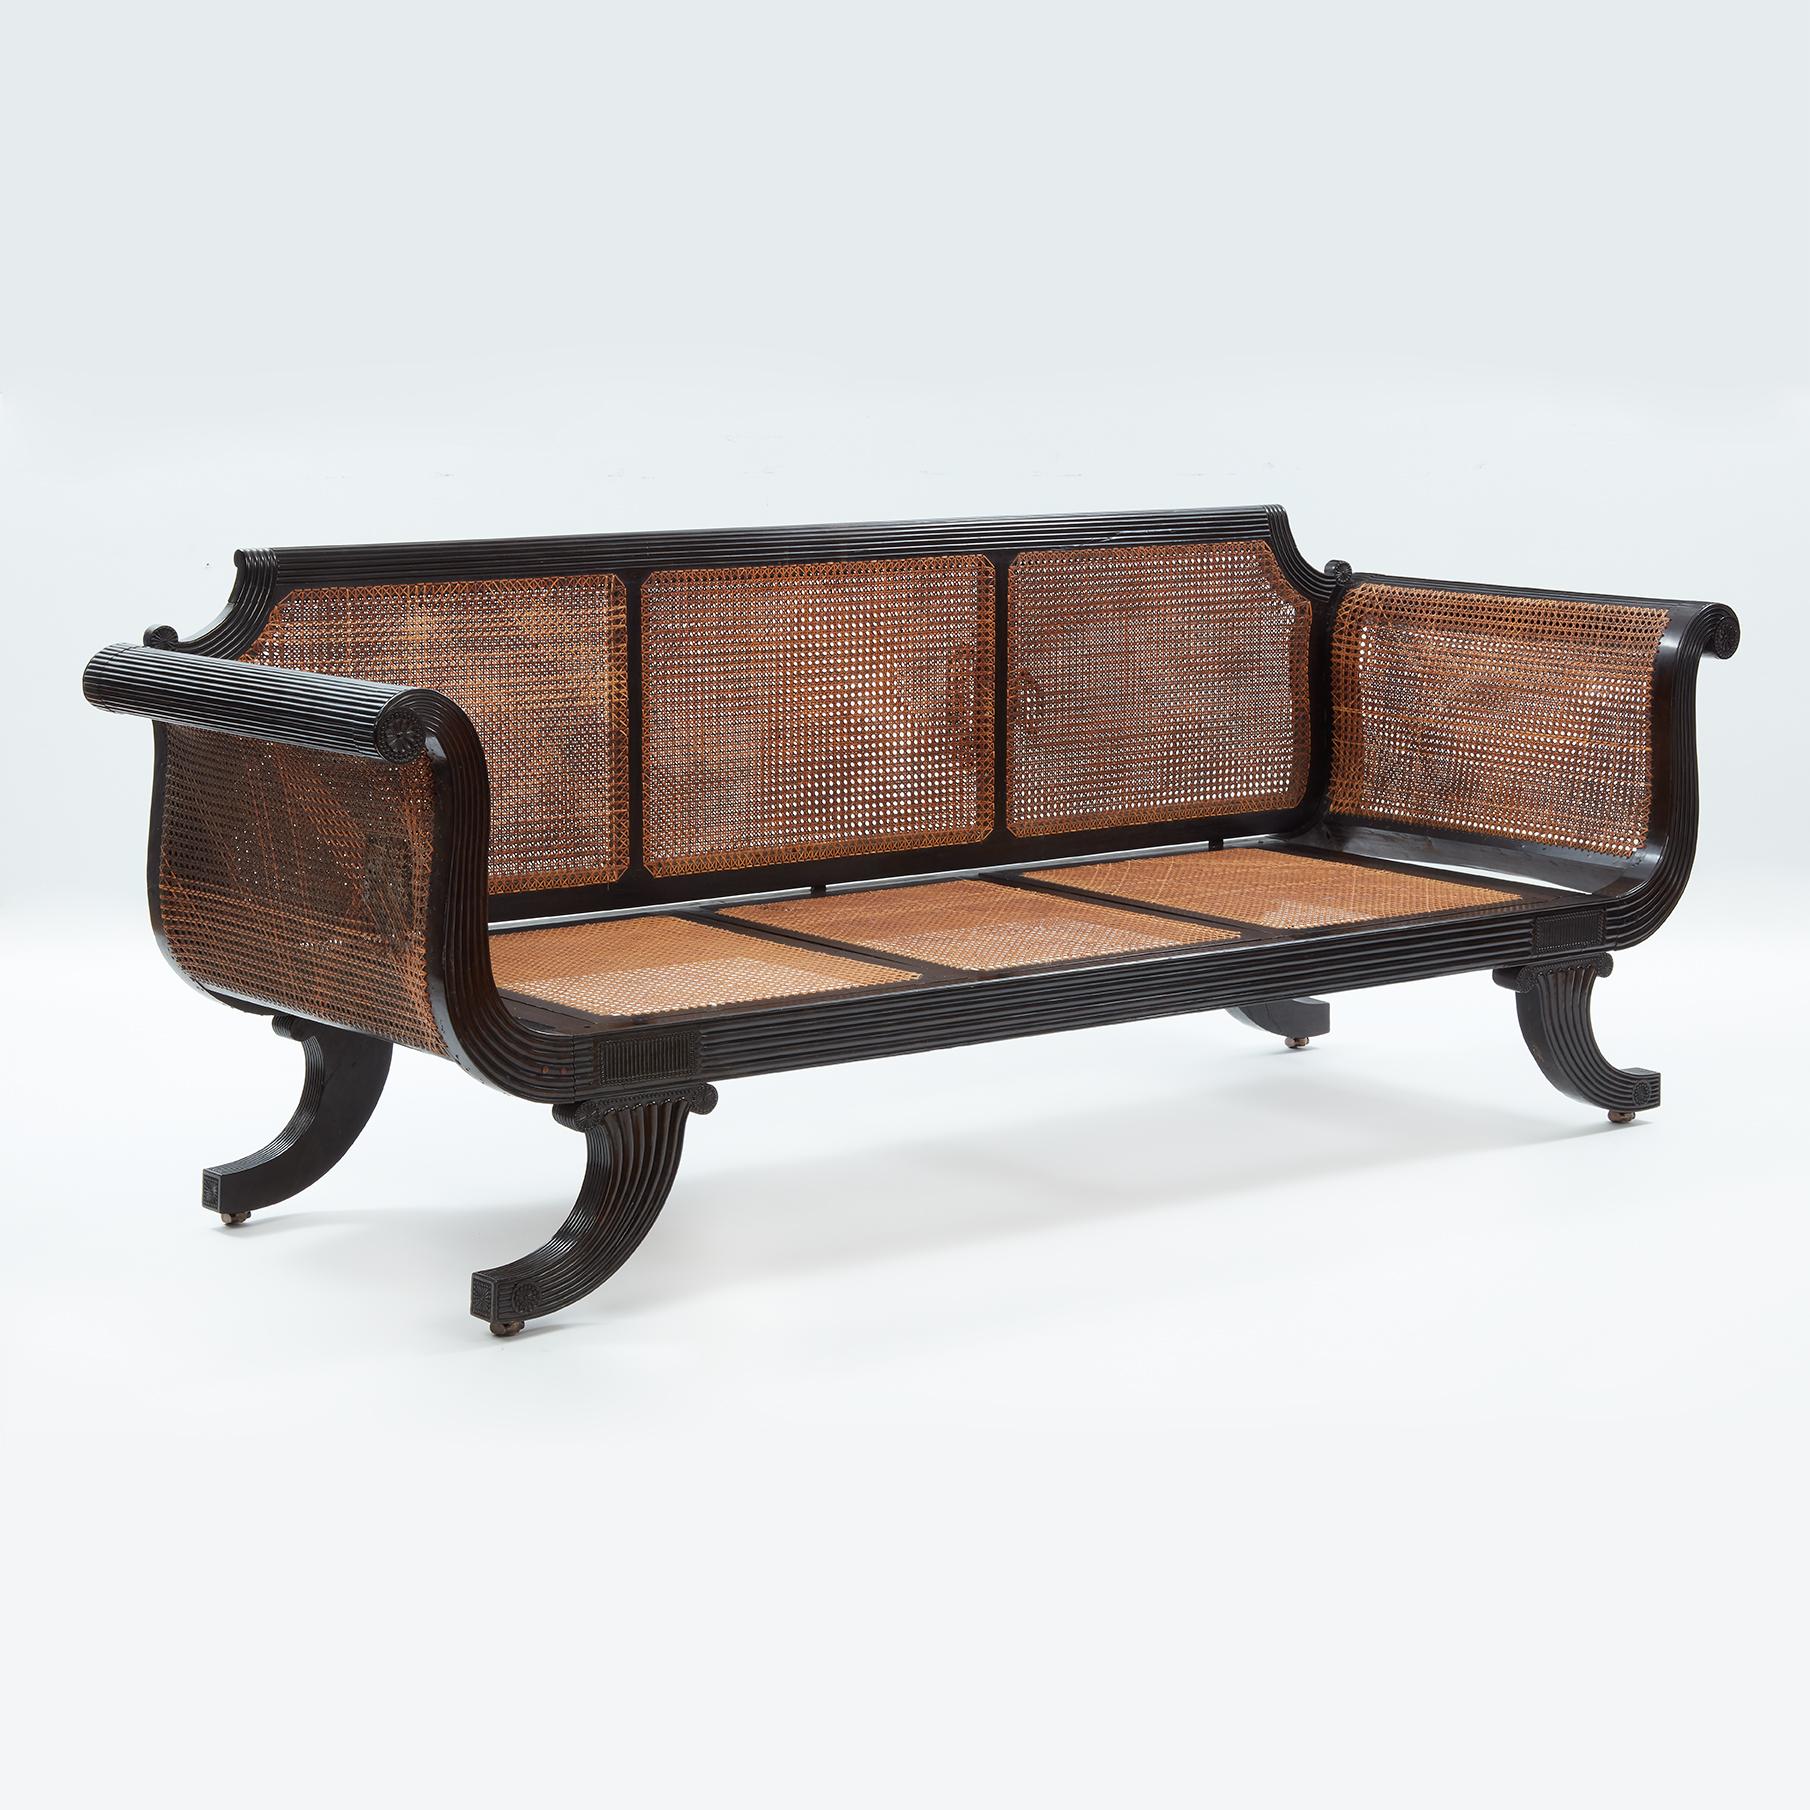 Ceylonese Ebenholz gerahmt Sofa im Regency-Stil CIRCA 1830. Sitze und Rückenlehne mit Stöcken.